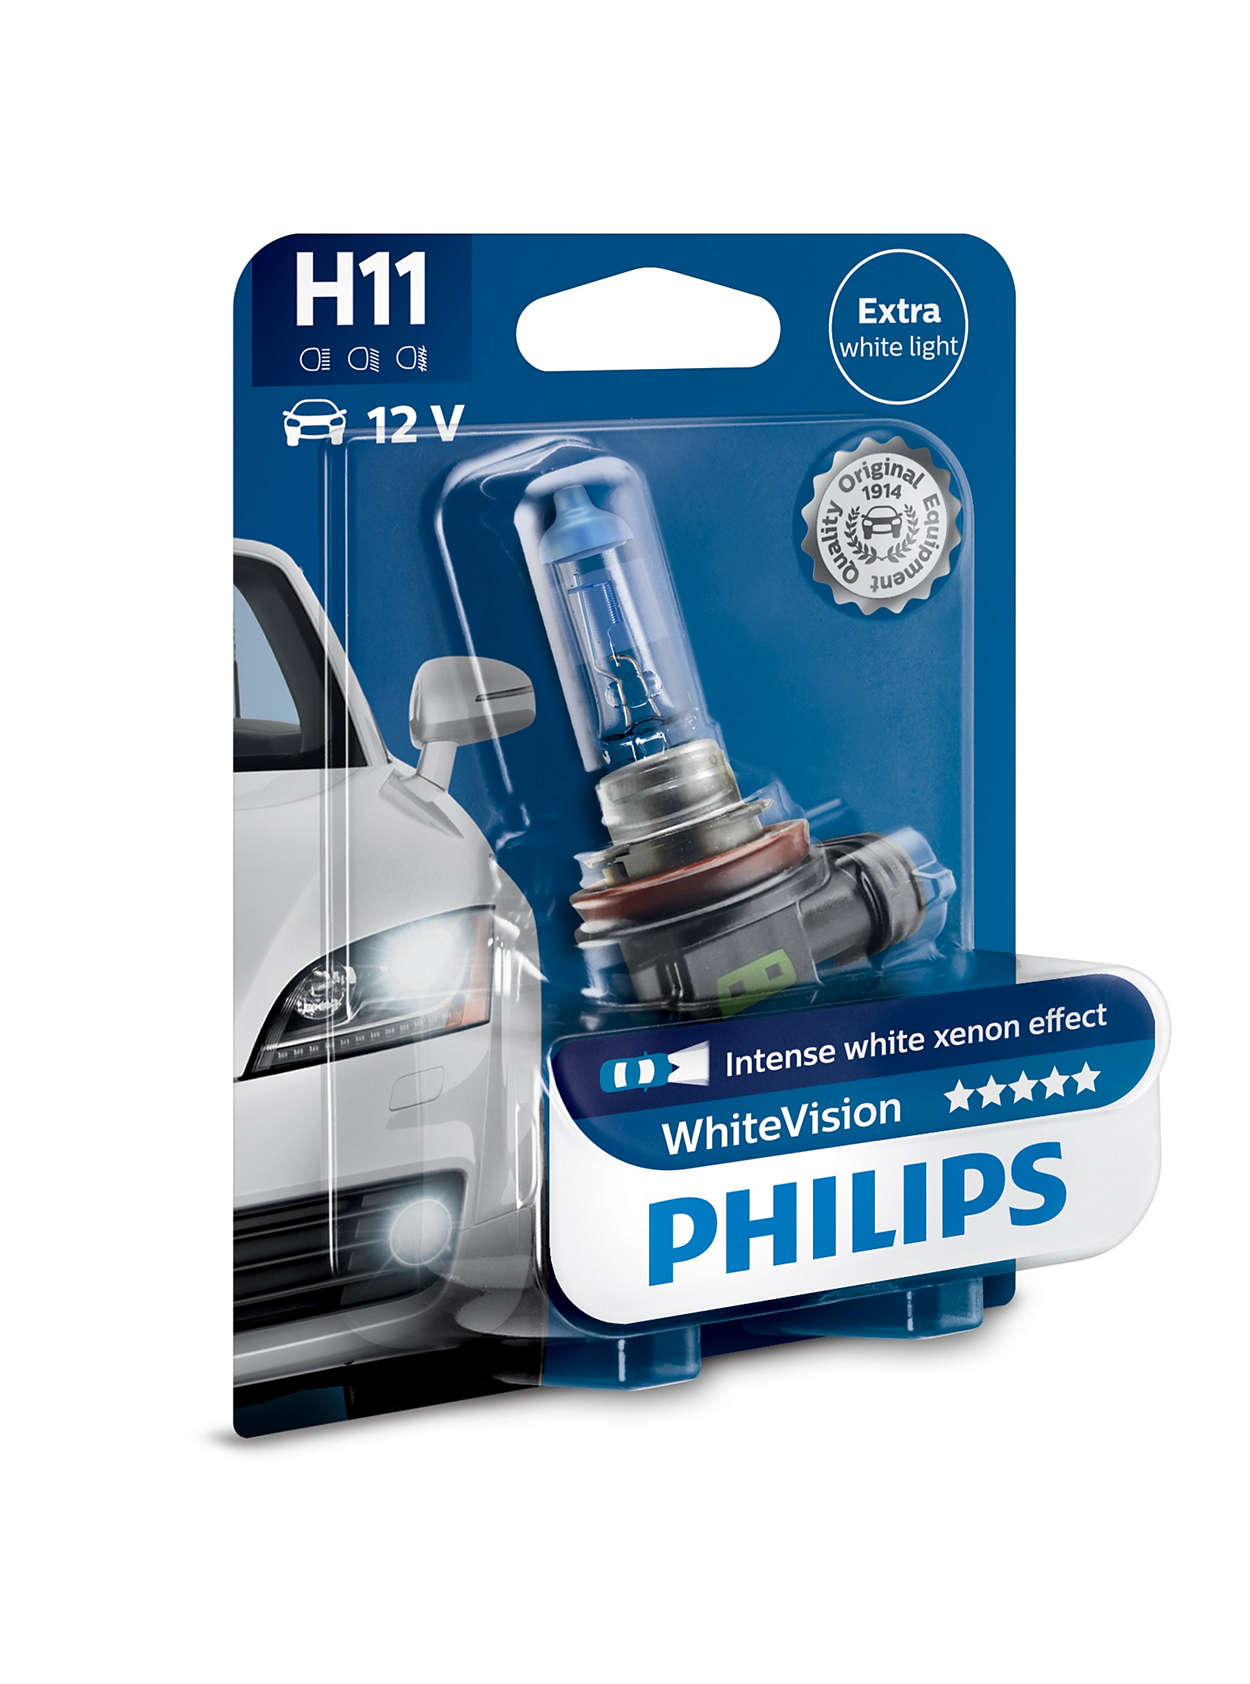 H11 Philips whitevision intenso efecto Xenon faros lámpara Duo Box 